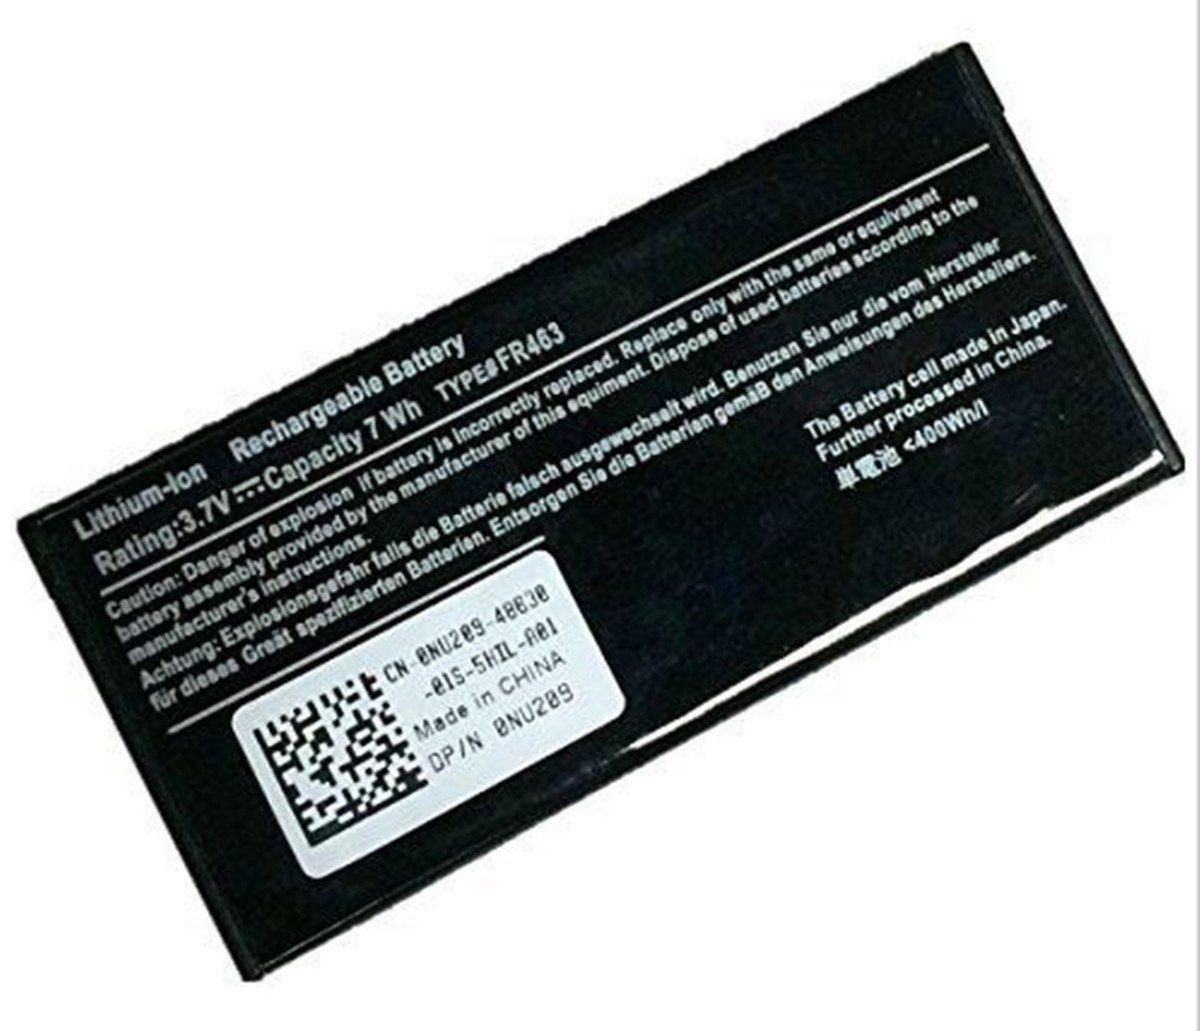 batterie Dell PowerEdge 2970, batteries Dell PowerEdge 2970